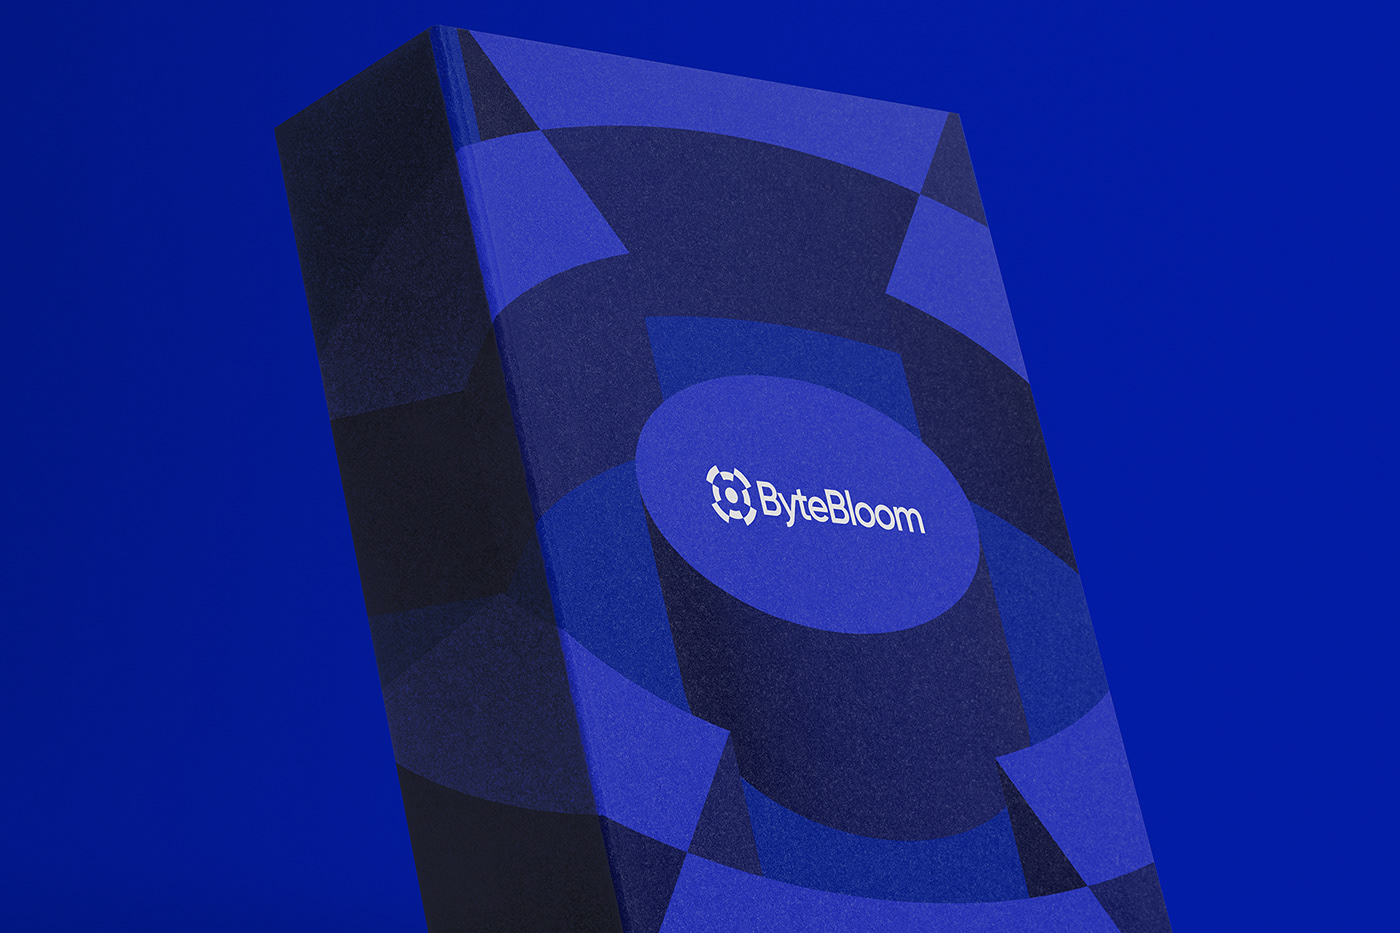 Office booklet design of ByteBloom.